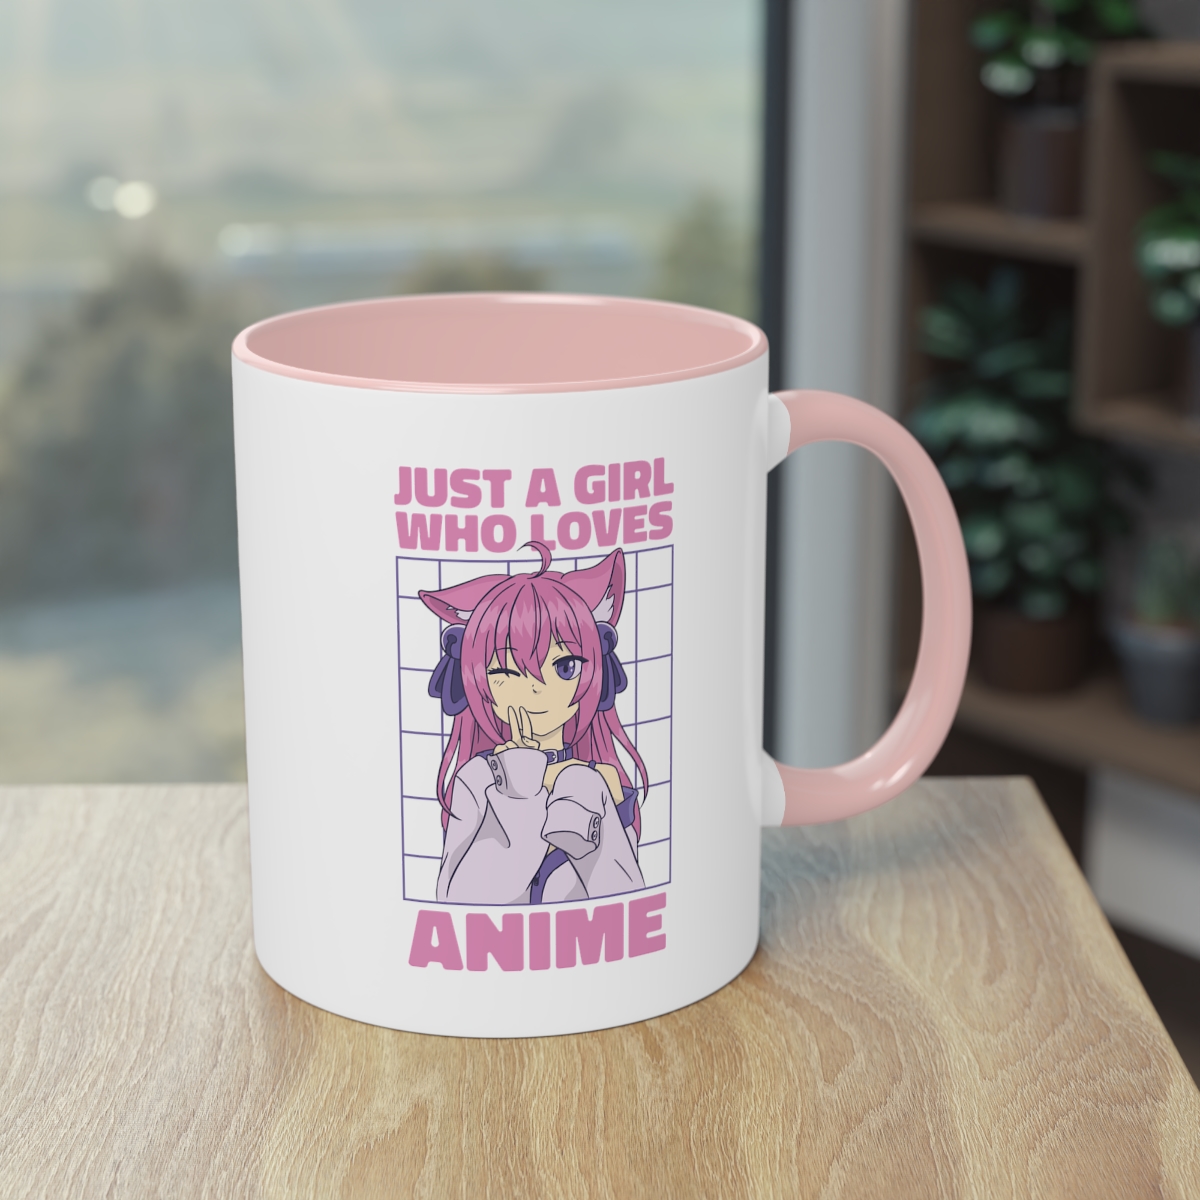 Anime-Liebhaberin - Die Manga/Anime-Tasse mit Otaku Girl